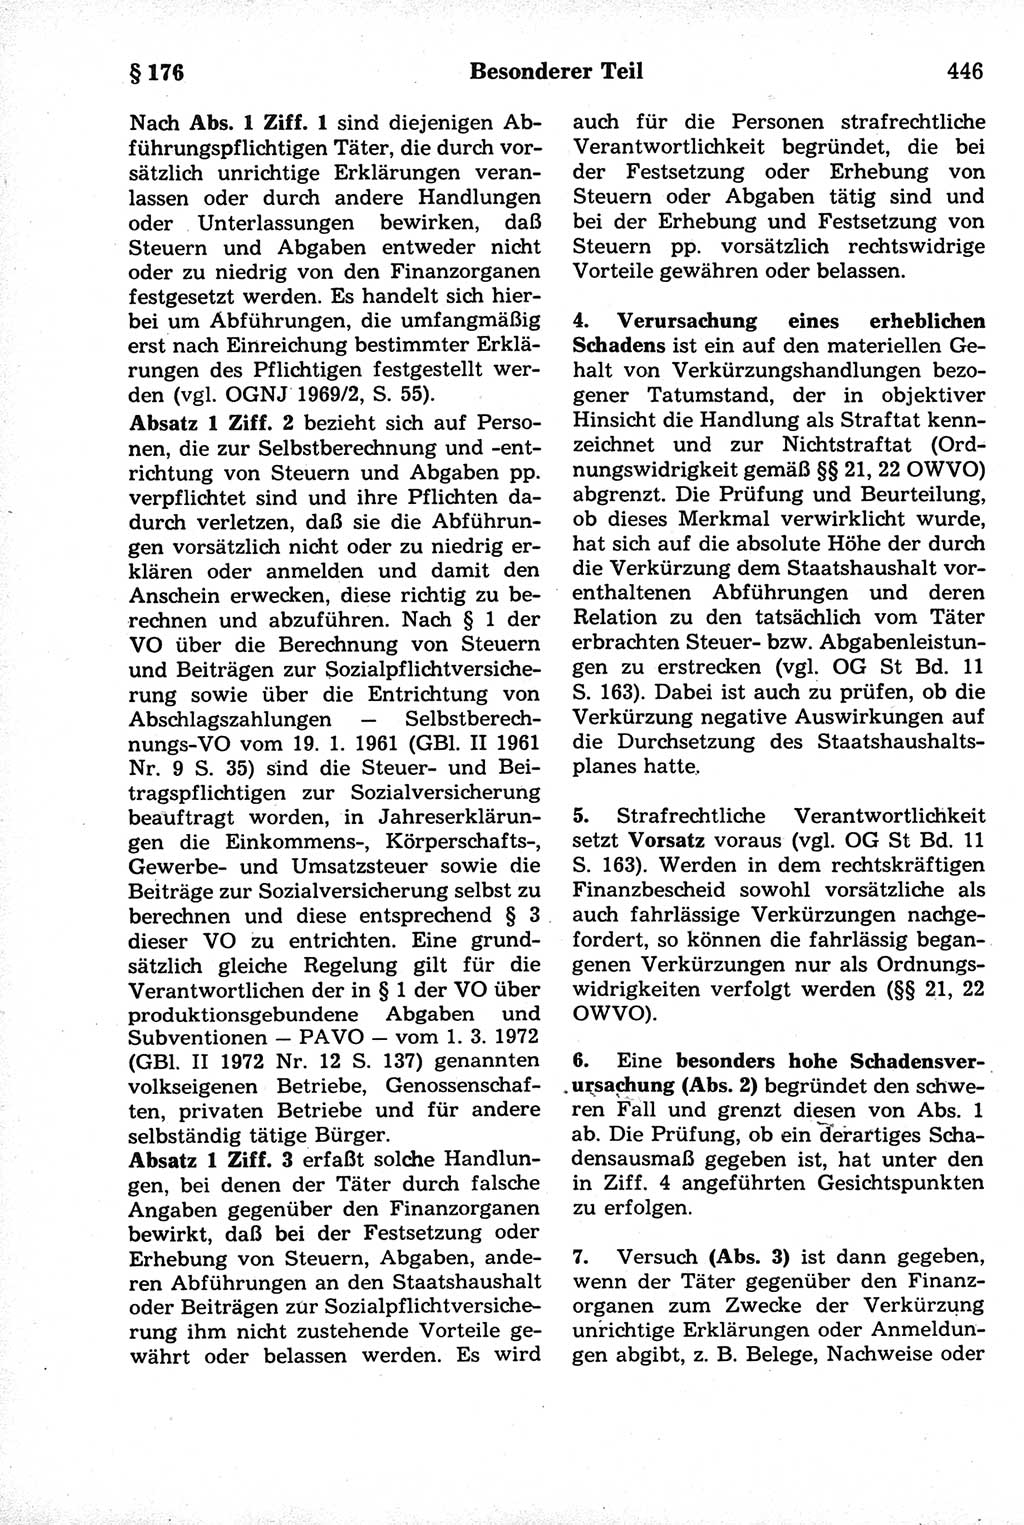 Strafrecht der Deutschen Demokratischen Republik (DDR), Kommentar zum Strafgesetzbuch (StGB) 1981, Seite 446 (Strafr. DDR Komm. StGB 1981, S. 446)